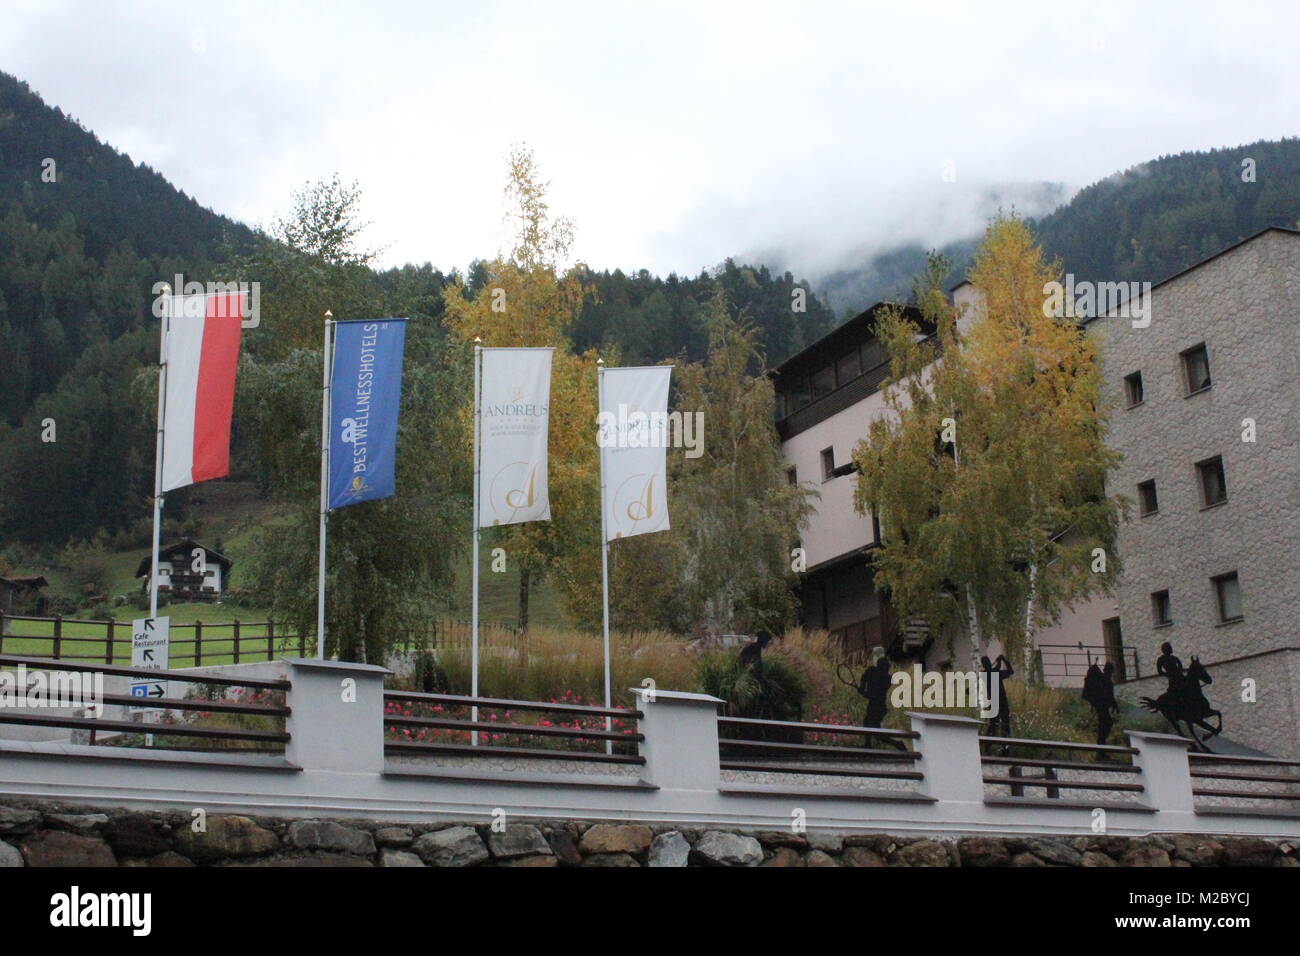 Direkt neben dem ANDREUS Mannschaftshotel befindet sich die 18-Loch Golfanlage - WM-Vorbereitung Fussball Nationalmannschaft a St. Leonhard / San Leonardo / Südtirol / Alto Adige 2014 Foto Stock